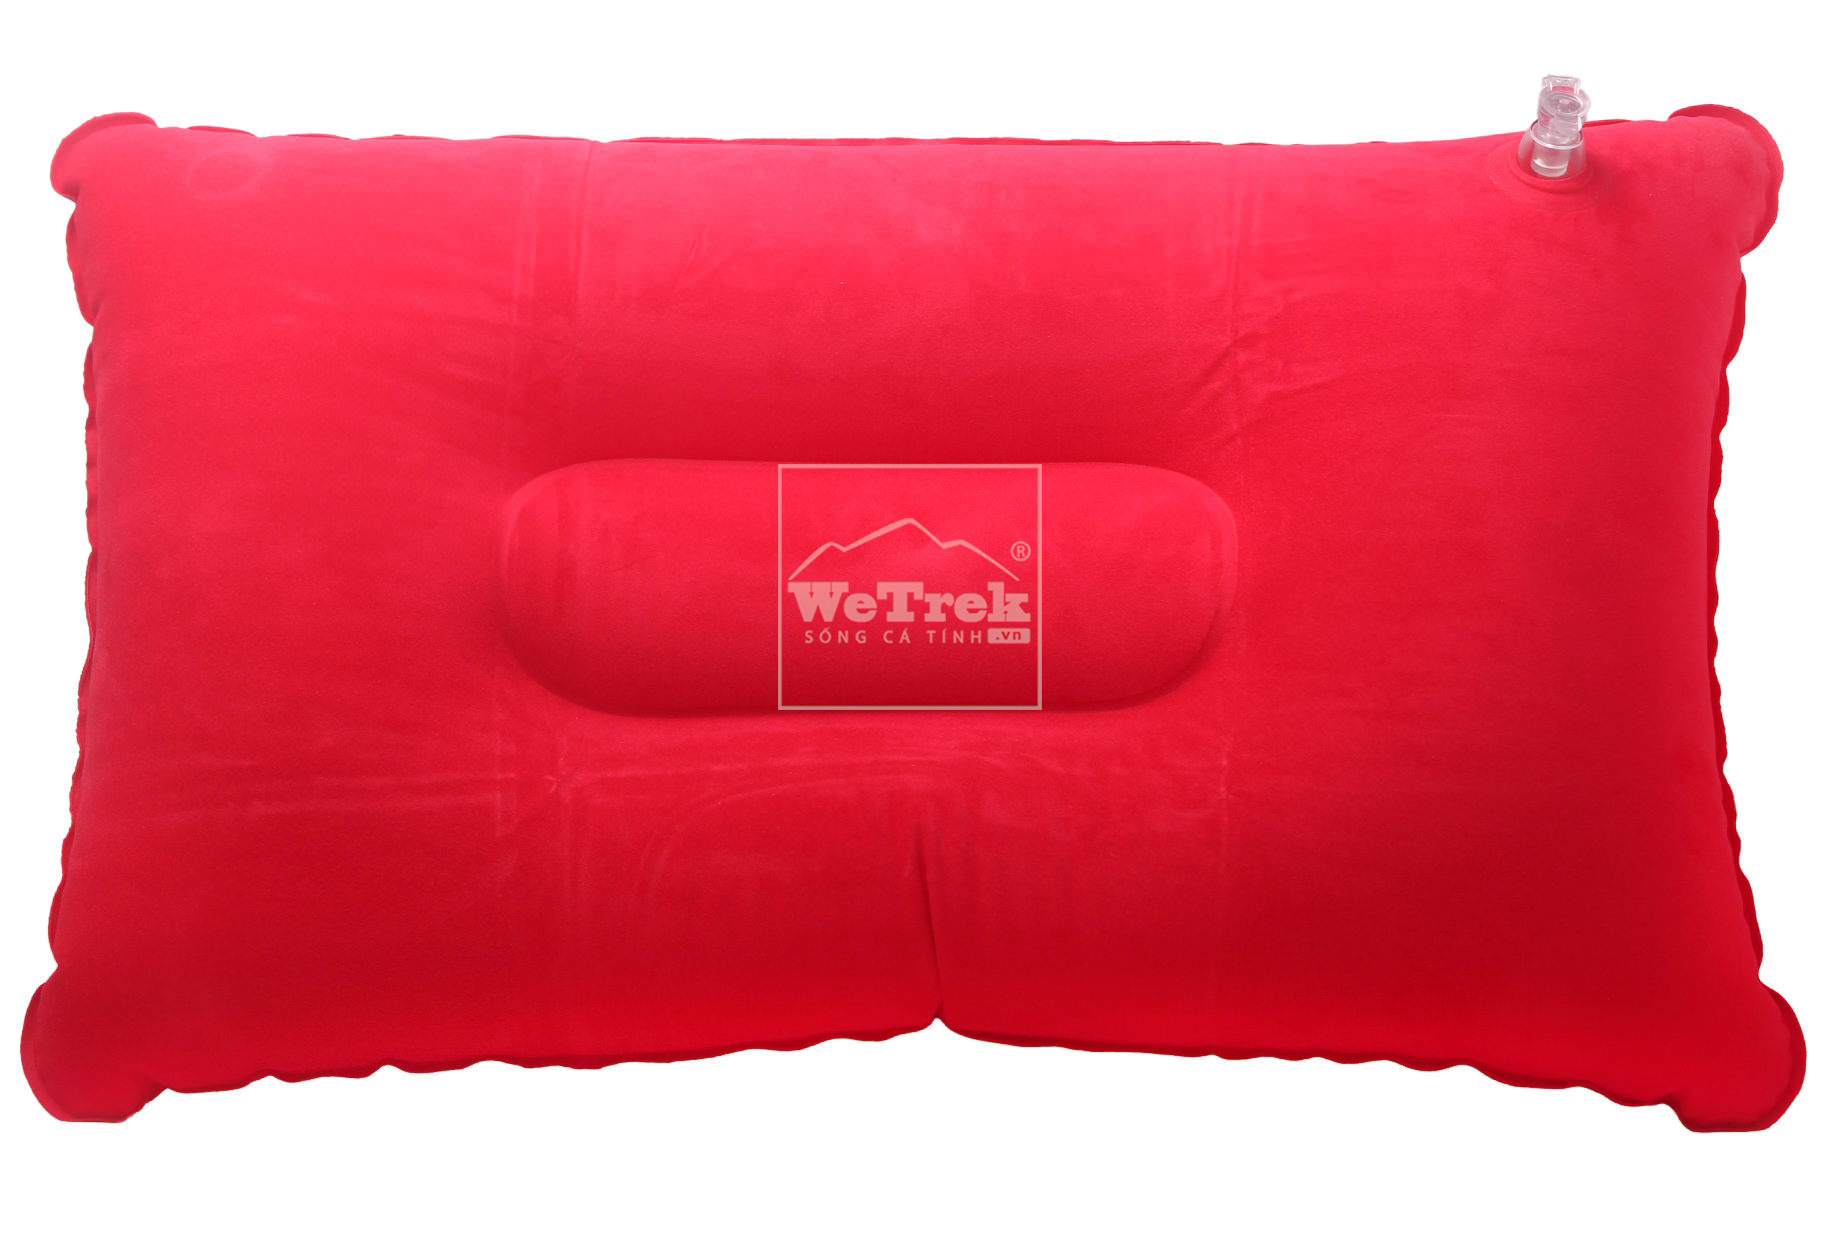 goi-bom-hoi-ryder-inflatable-pillow-h2002-6708-wetrek_vn-1